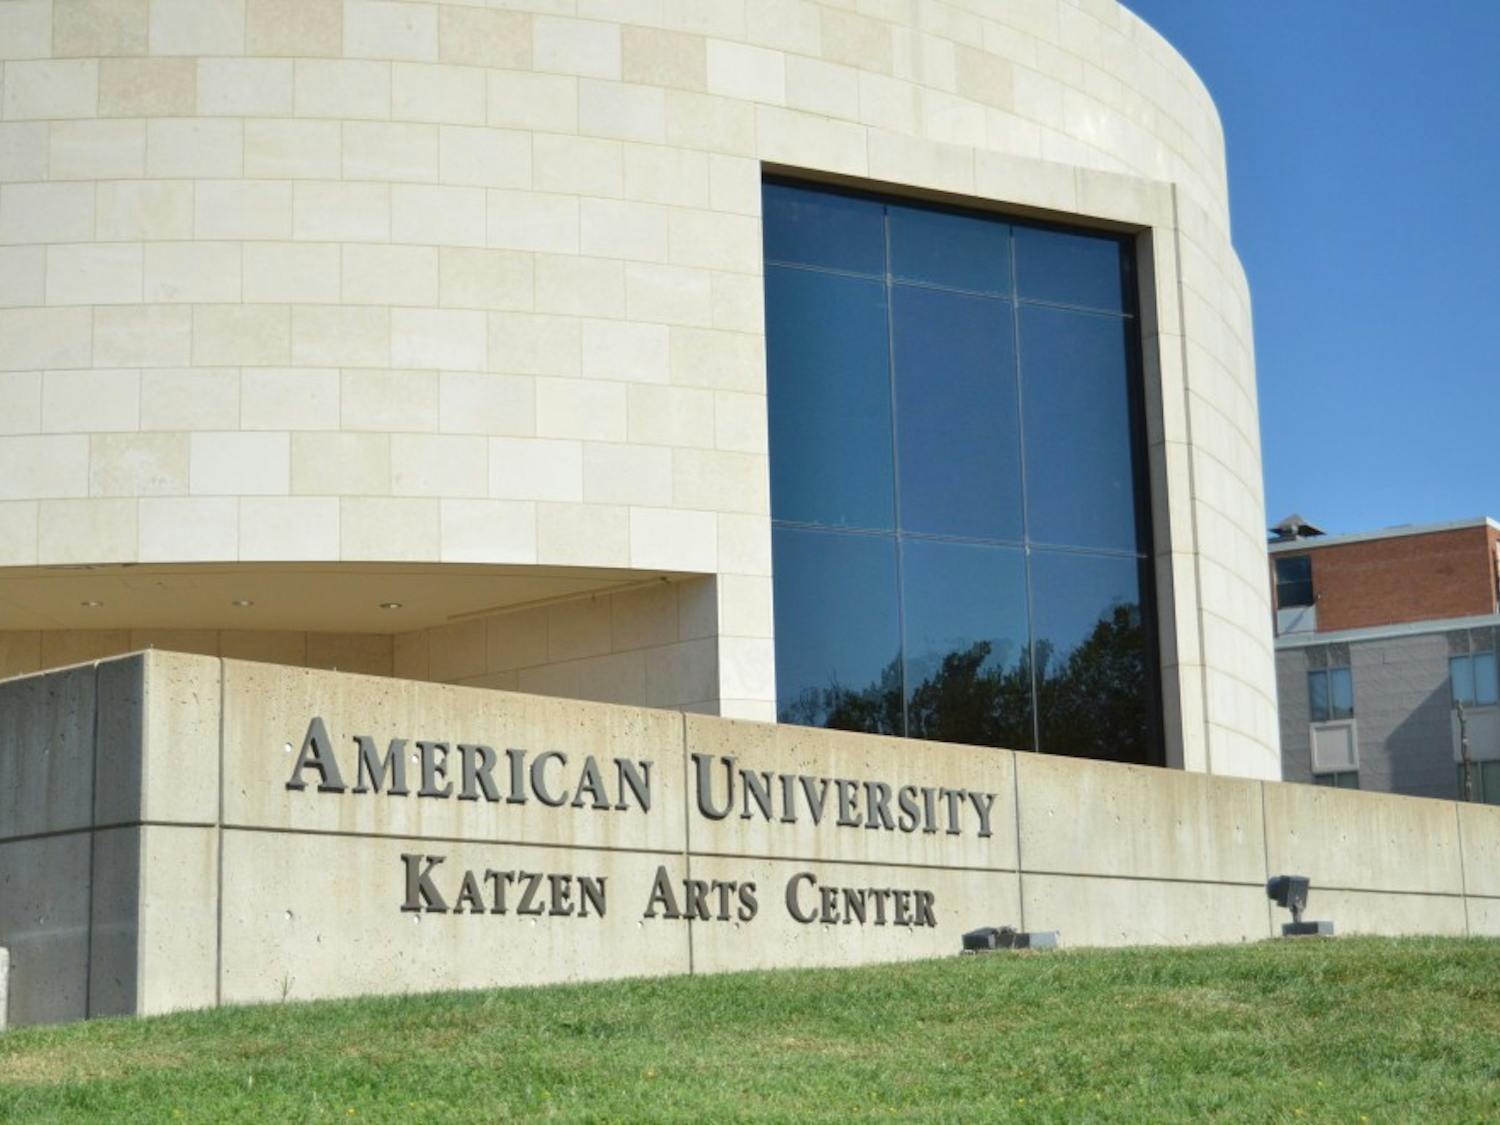 Katzen Arts Center Stock Image